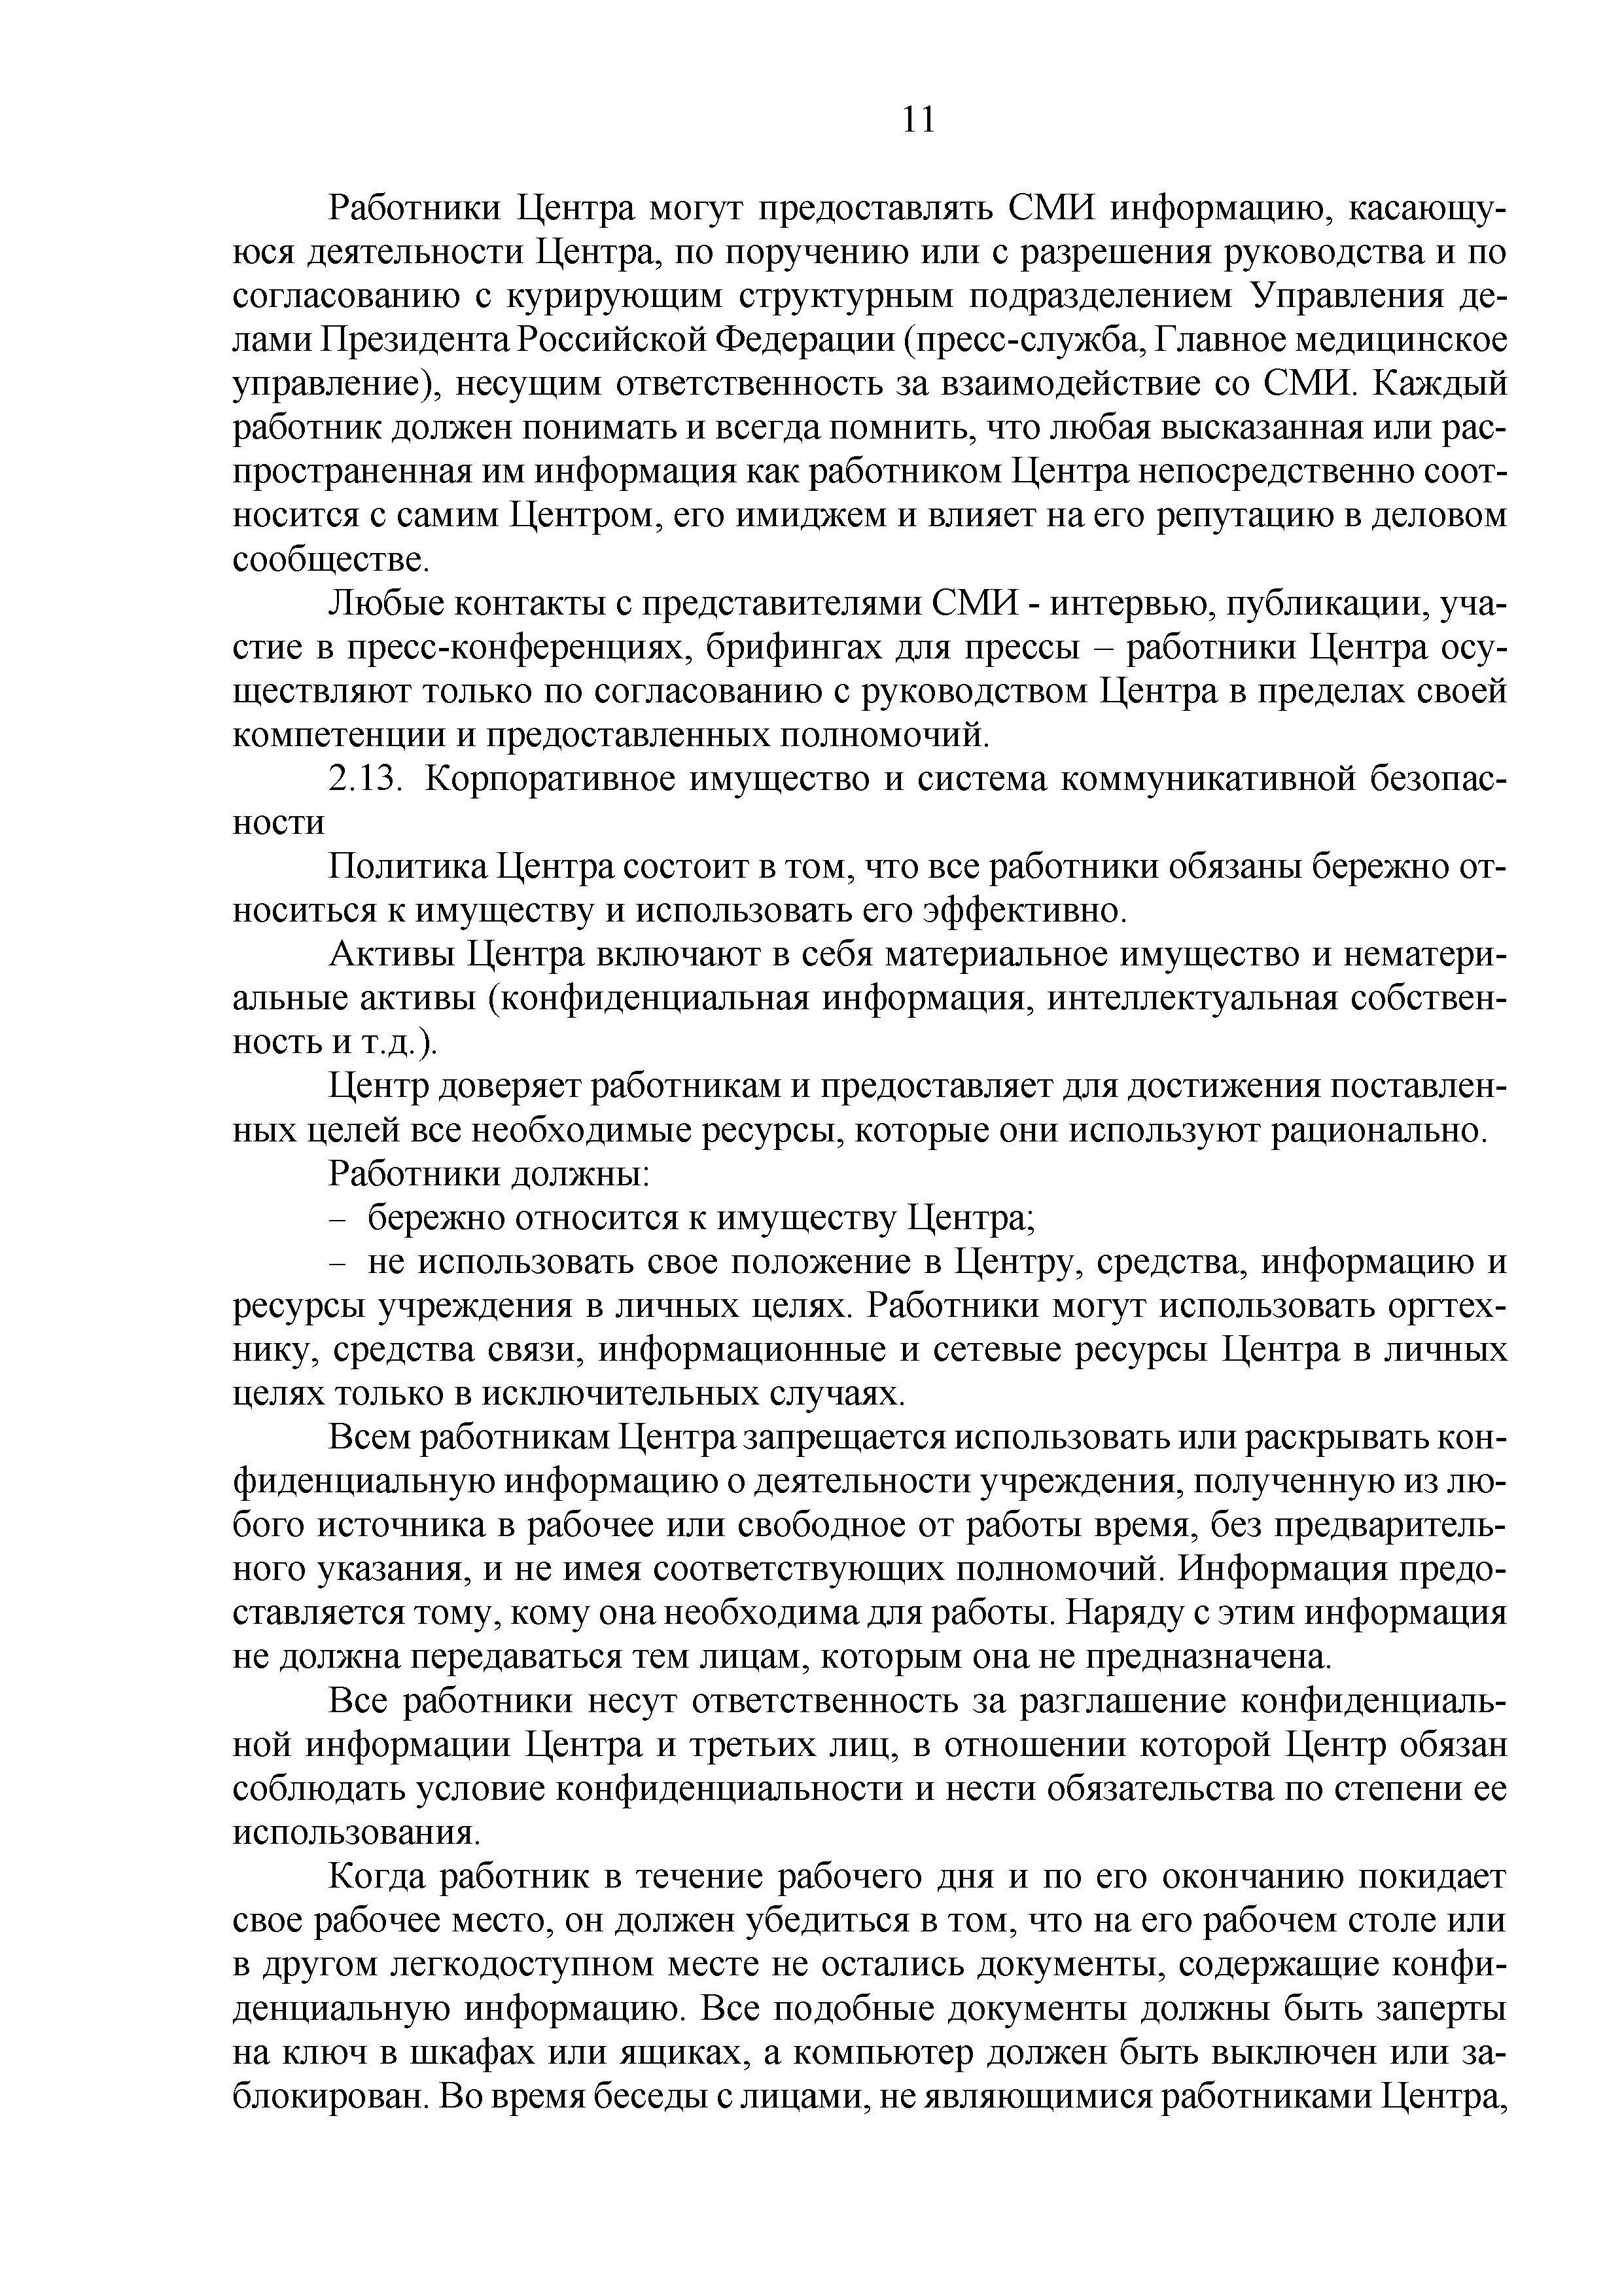 Приказ ЦГСЭН об утверждении политики и кодекса N82 2016 (Страница 23)